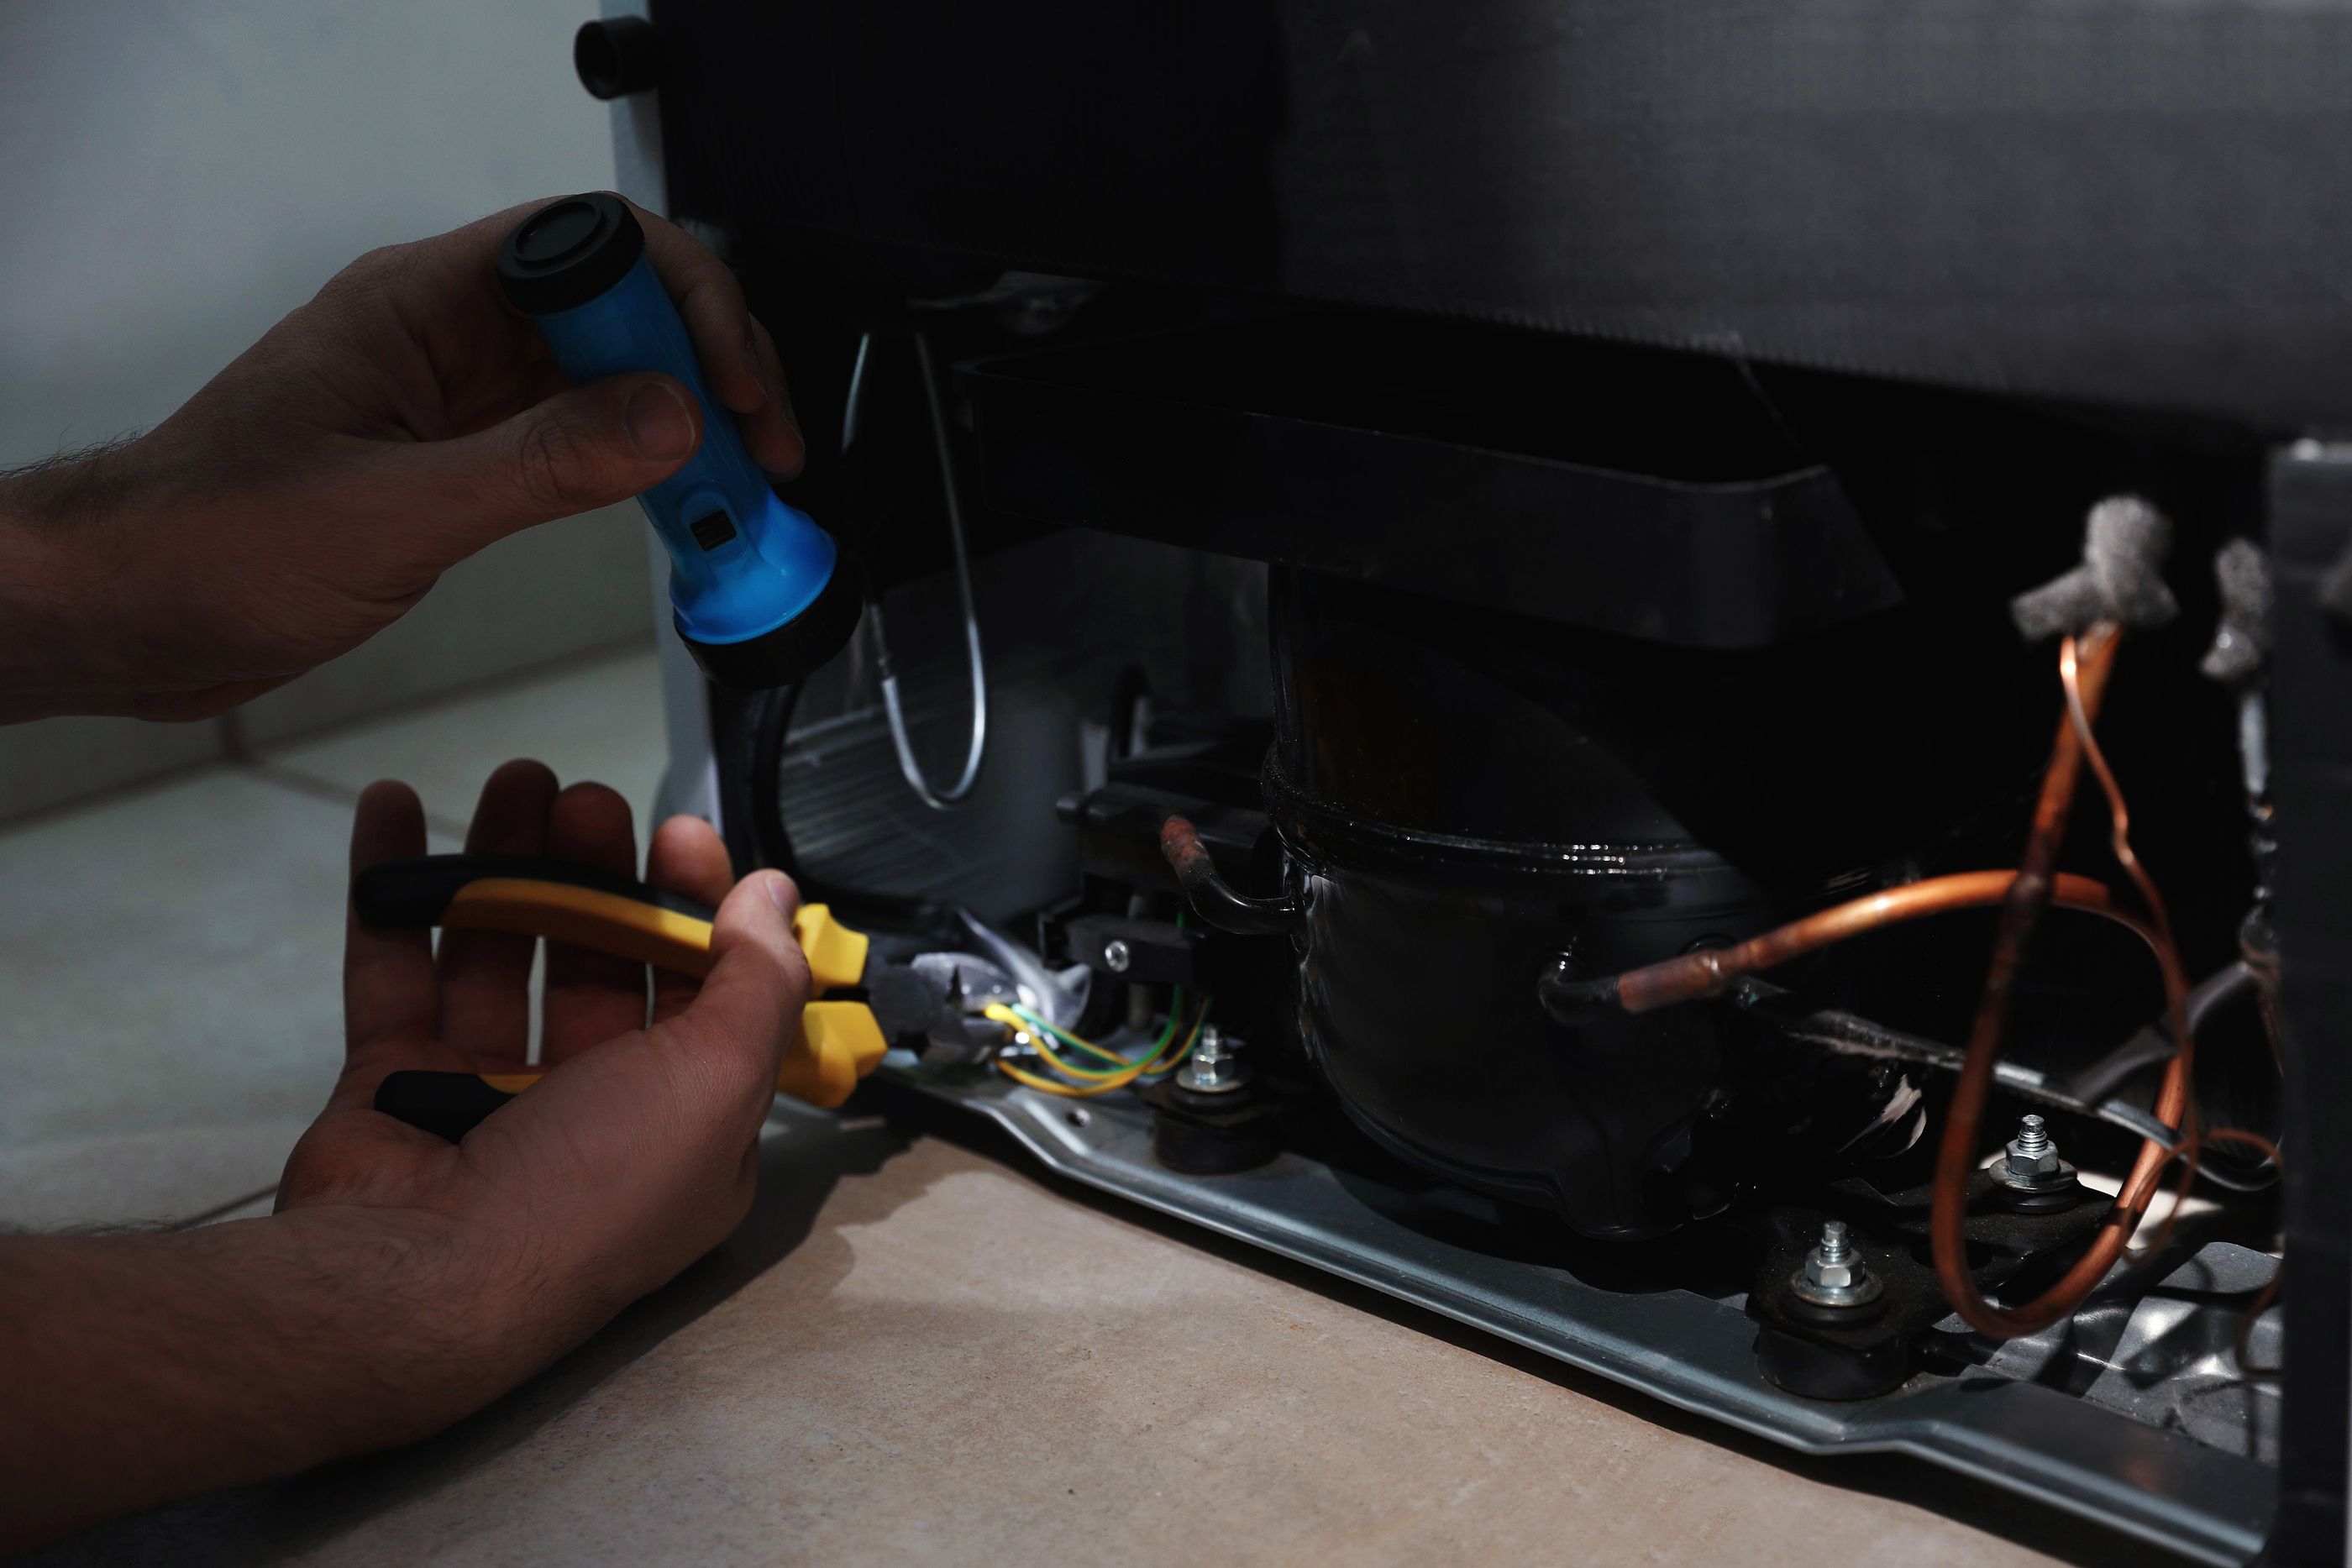 Los consumidores podrán exigir la reparación de sus electrodomésticos en vez de reemplazarlos (Bigstock)